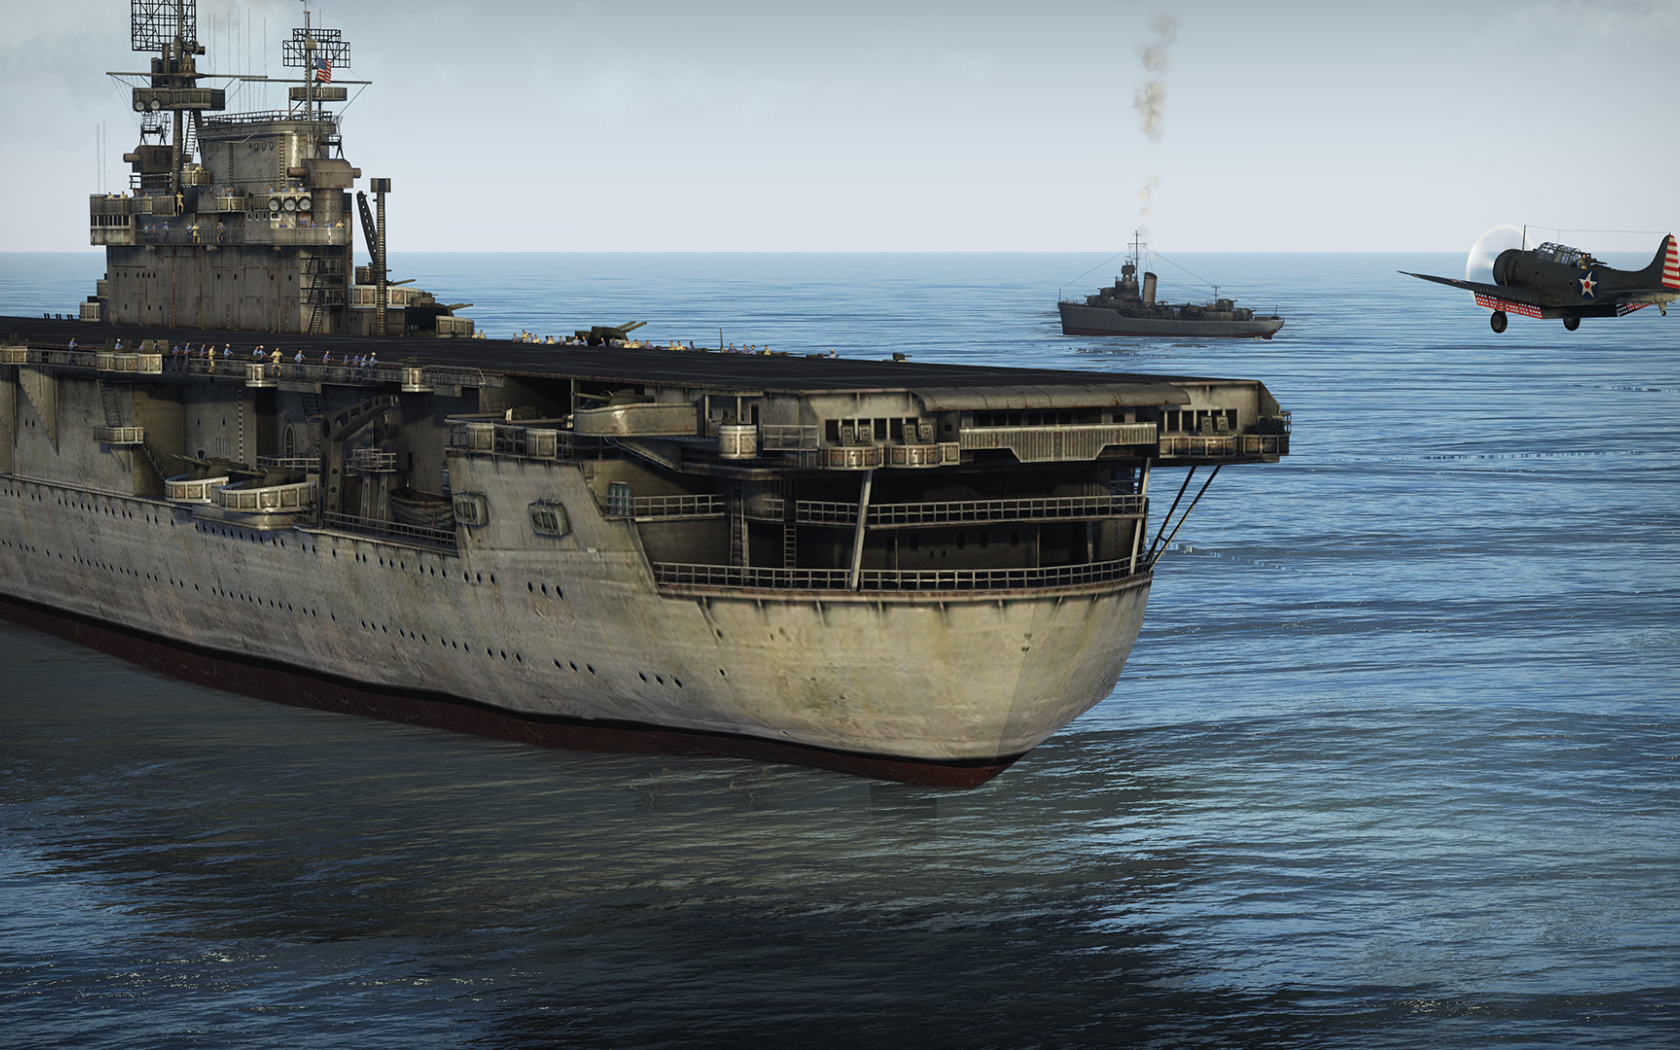 War Thunder huge ship